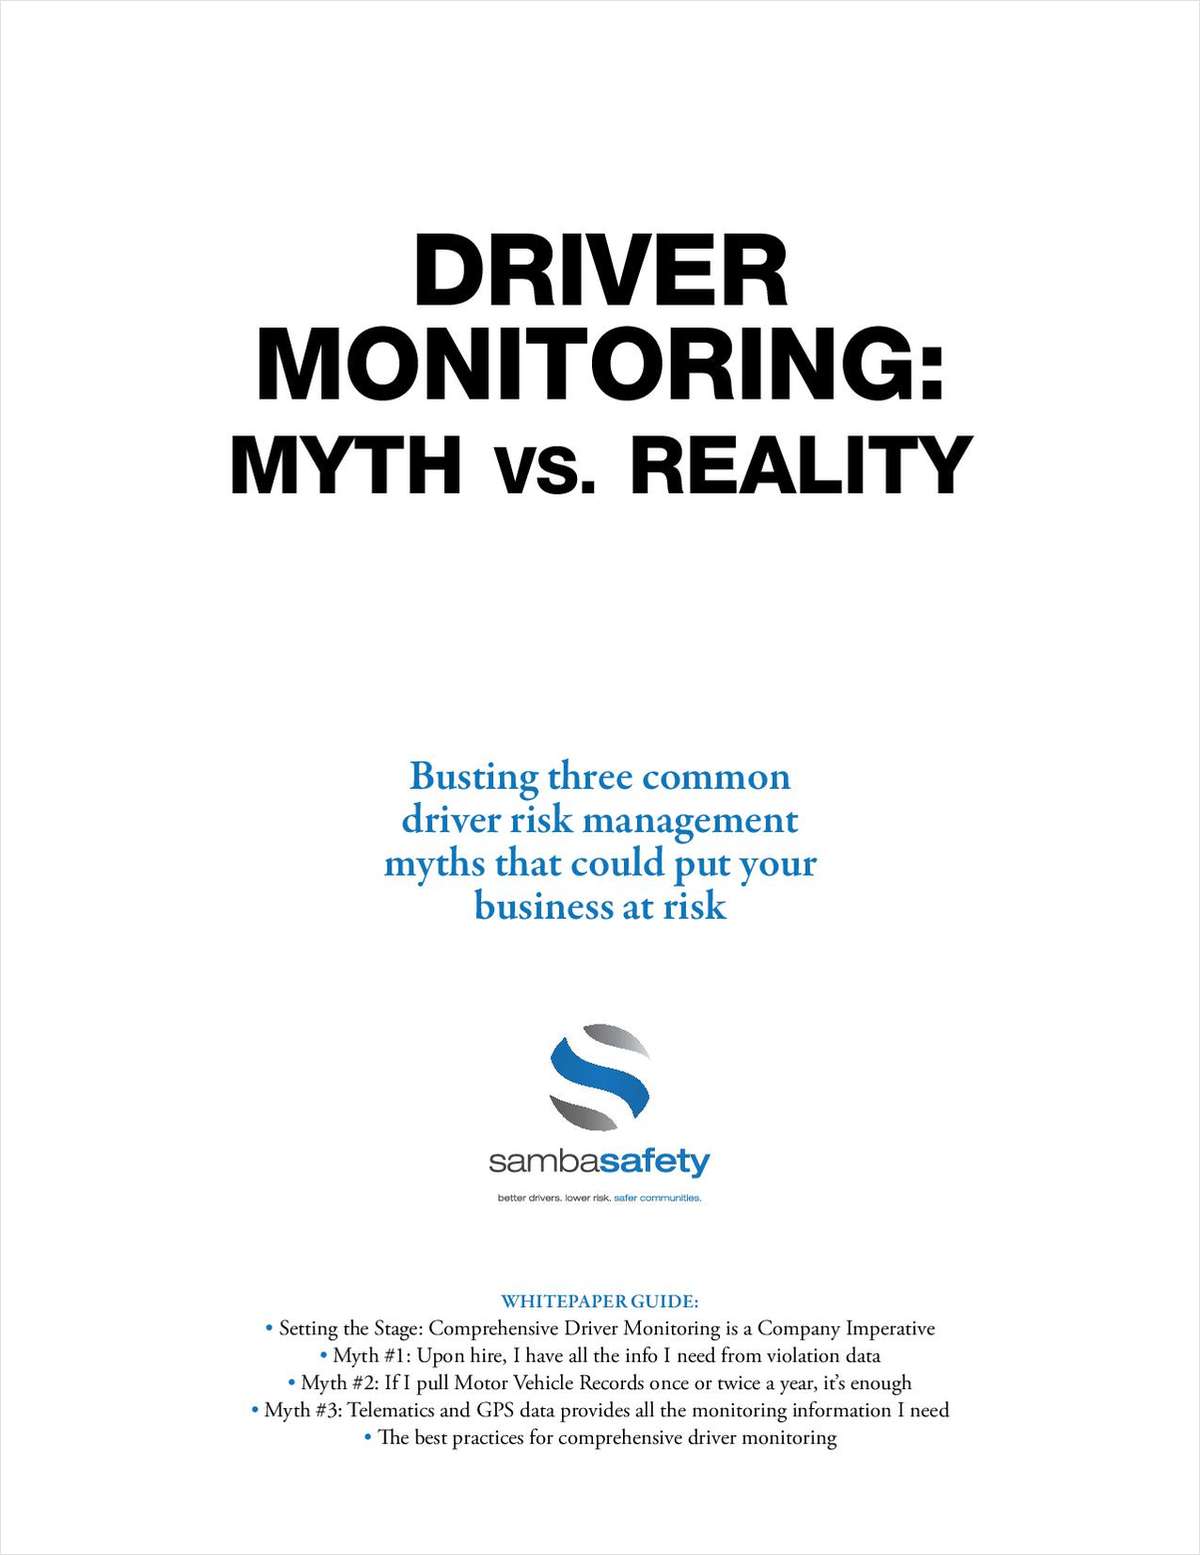 Driver Monitoring: Myth vs. Reality